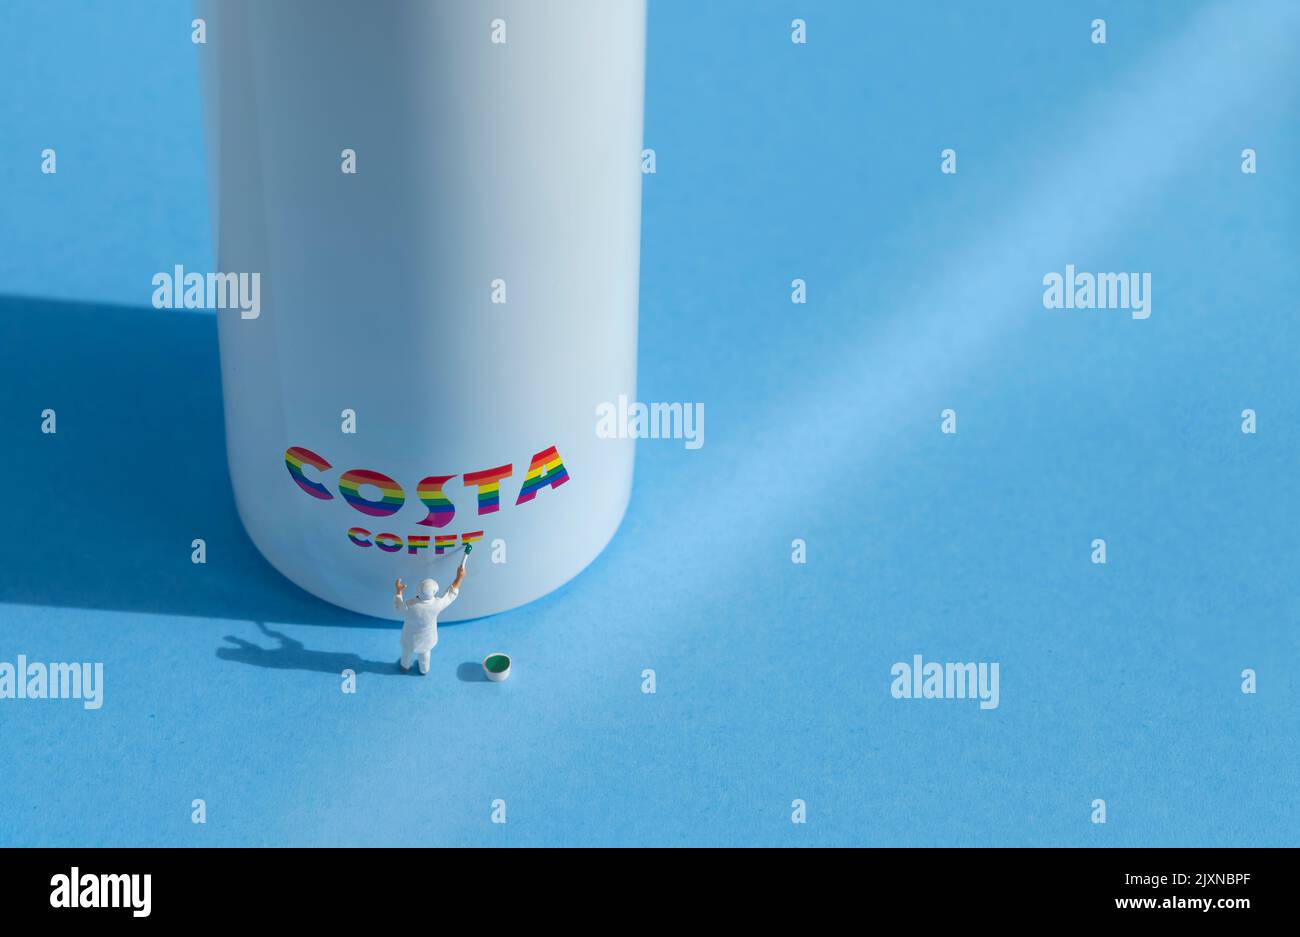 Auf der Seite einer Wasserflasche ist eine kleine Malerfigur abgebildet, die ein Costa-Logo zeigt. Das Branding ist in LGBTQ-Regenbogenfarben gehalten Stockfoto